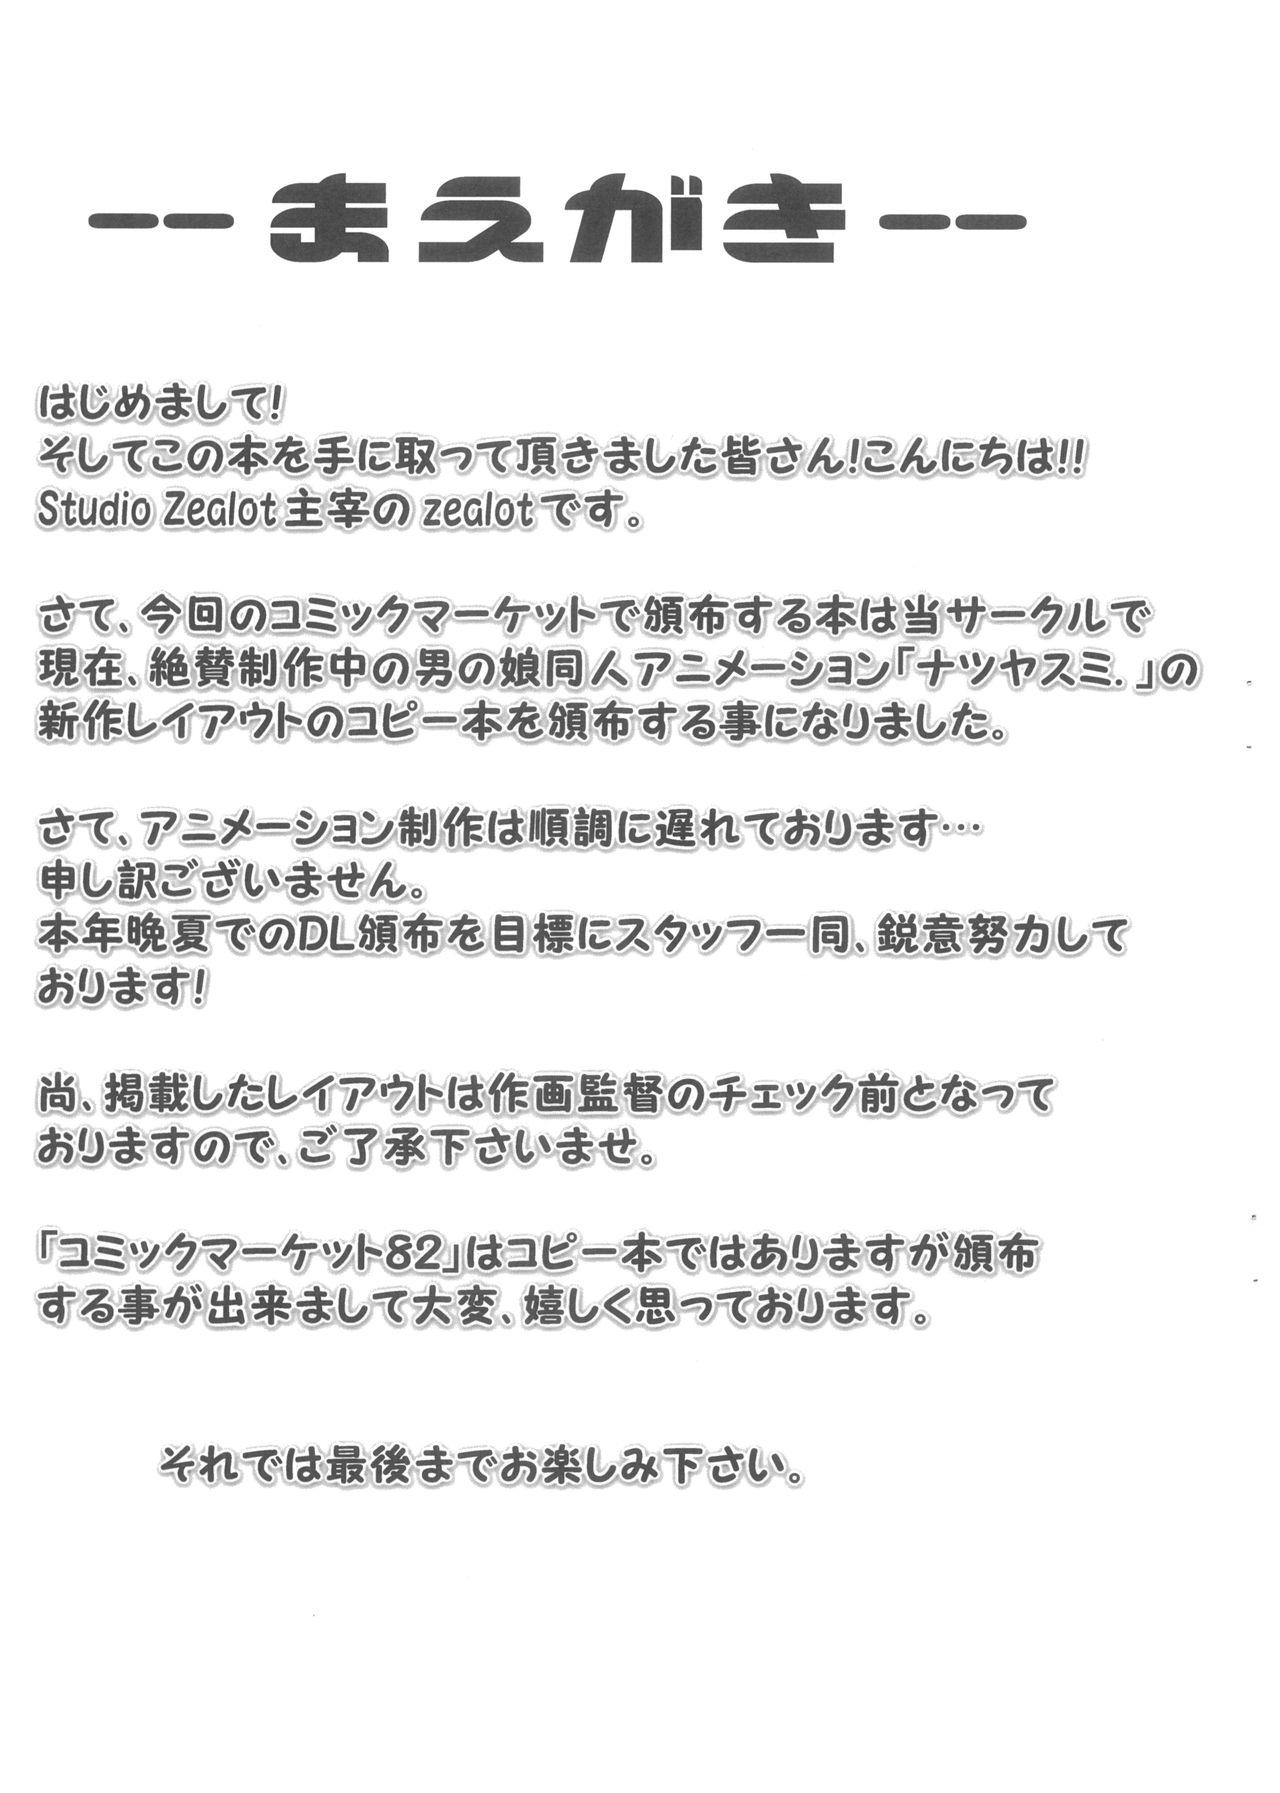 Natsuyasumi Period Layout Shuu 12 Aug. 2012 Ver. 3